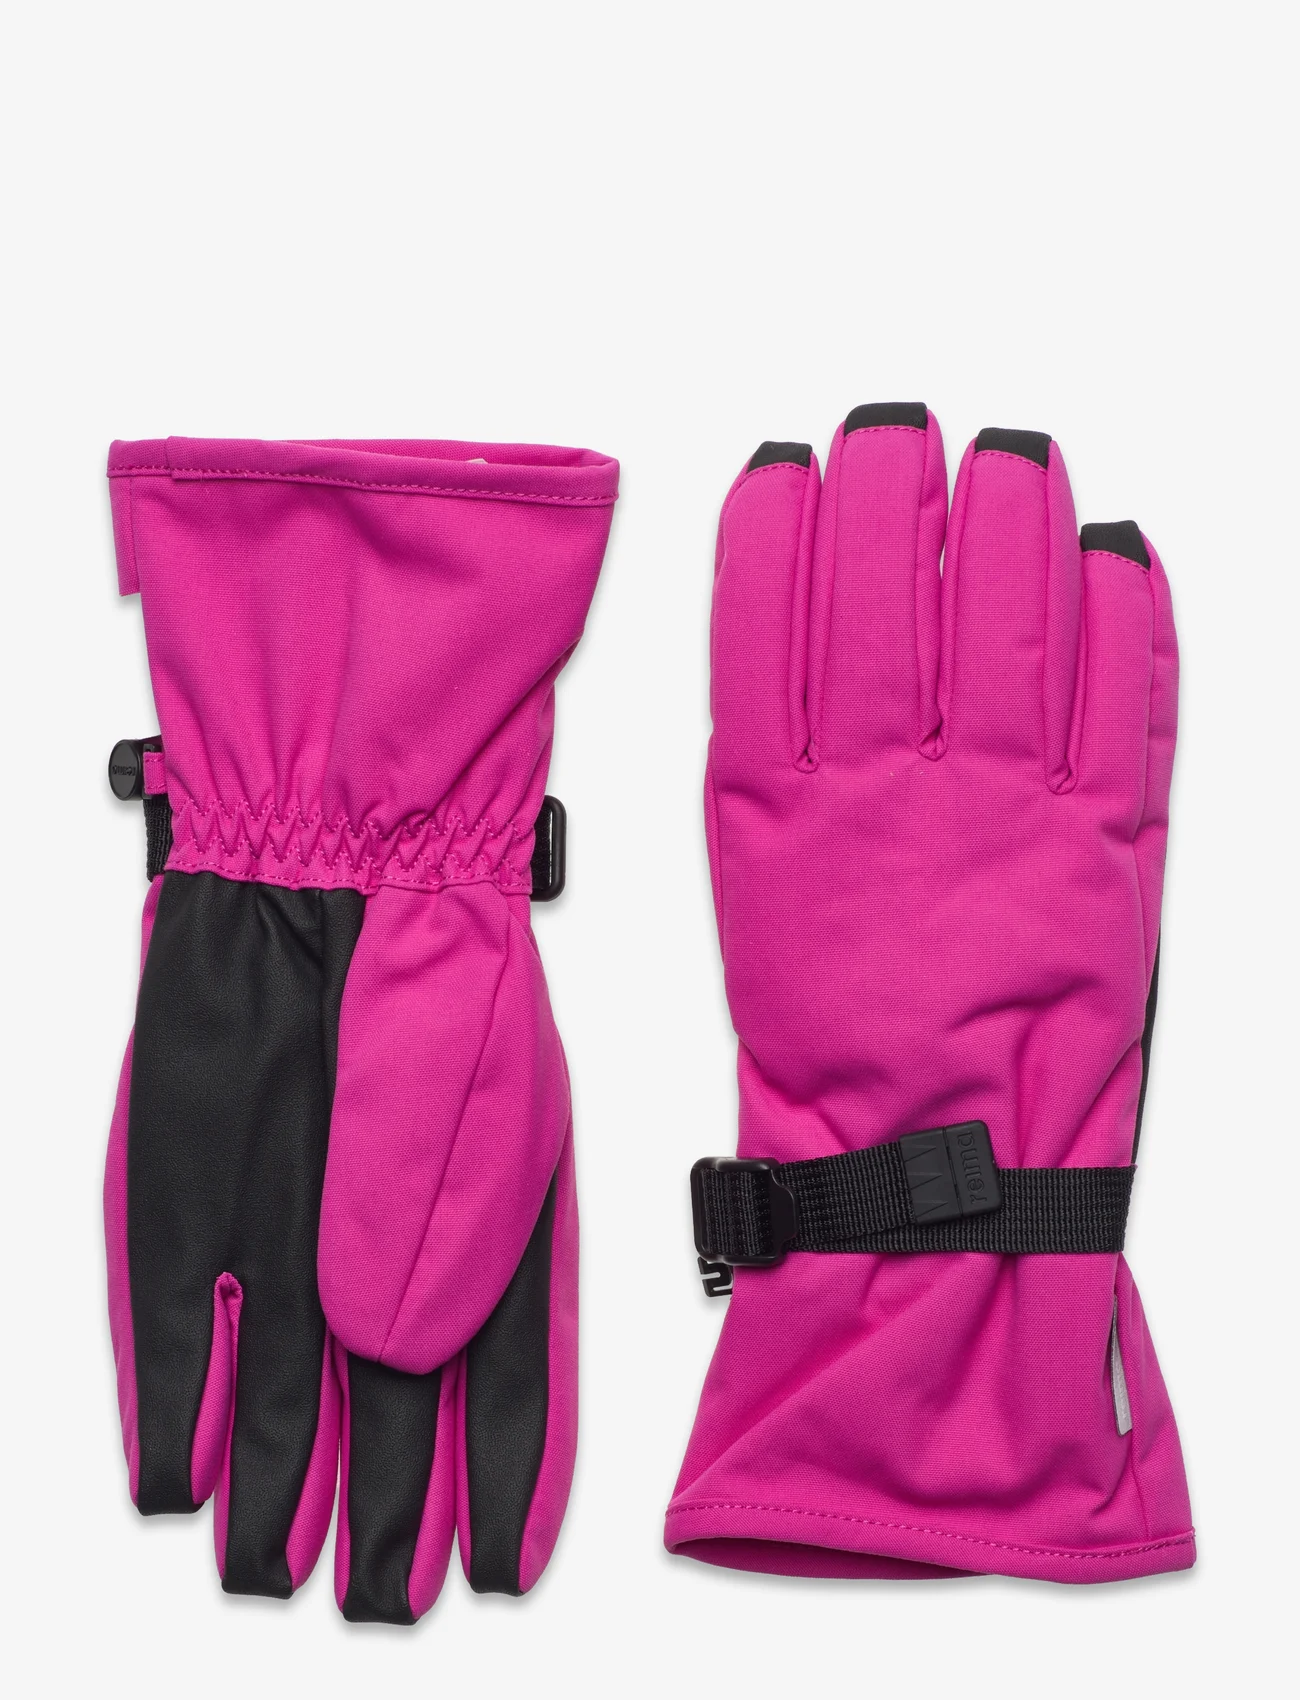 Reima - Reimatec gloves, Tartu - lowest prices - magenta purple - 0